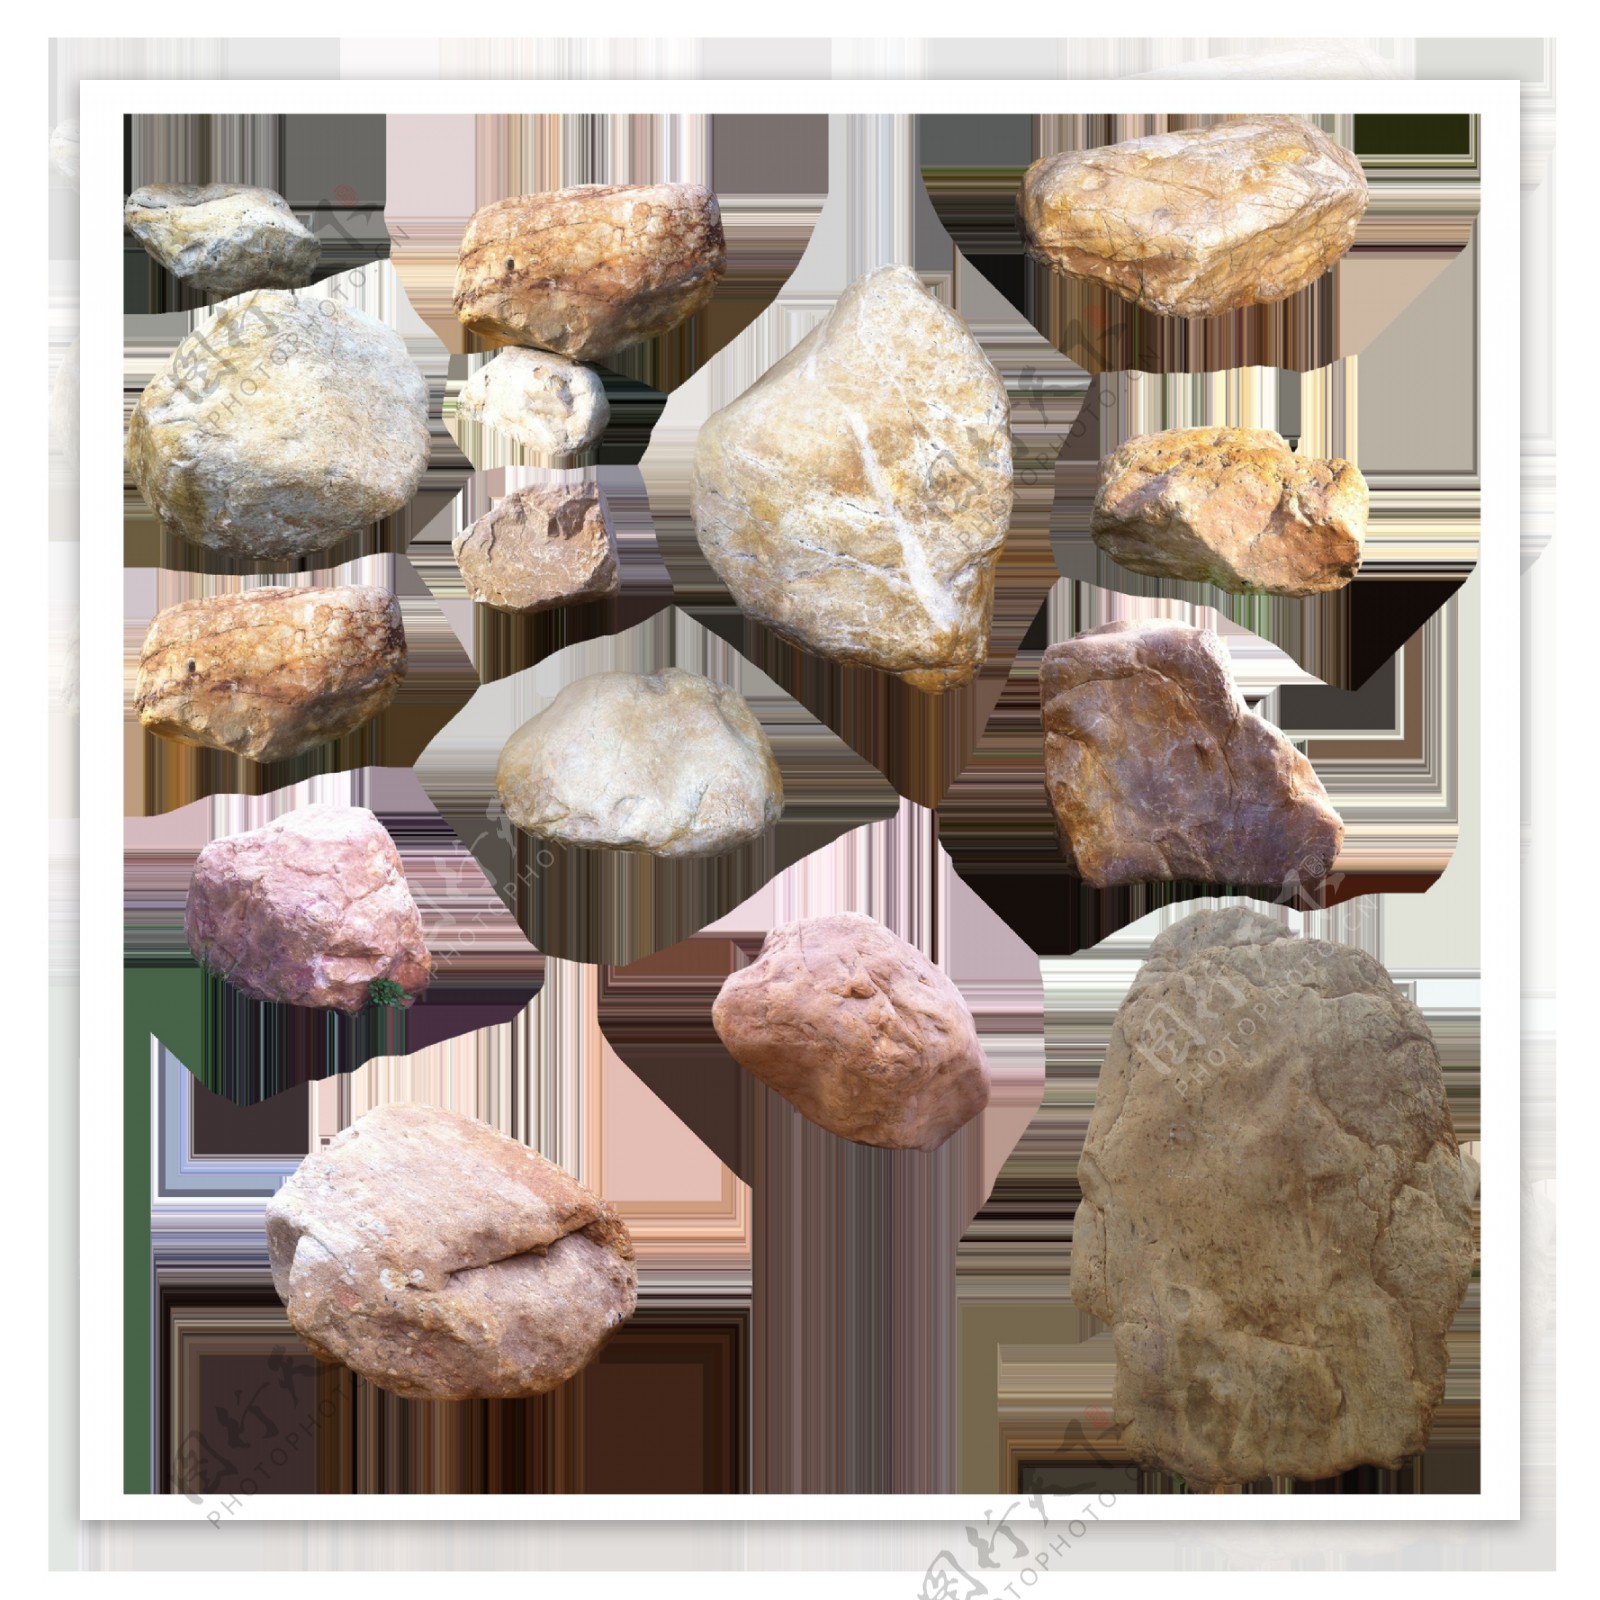 多种石头png元素素材